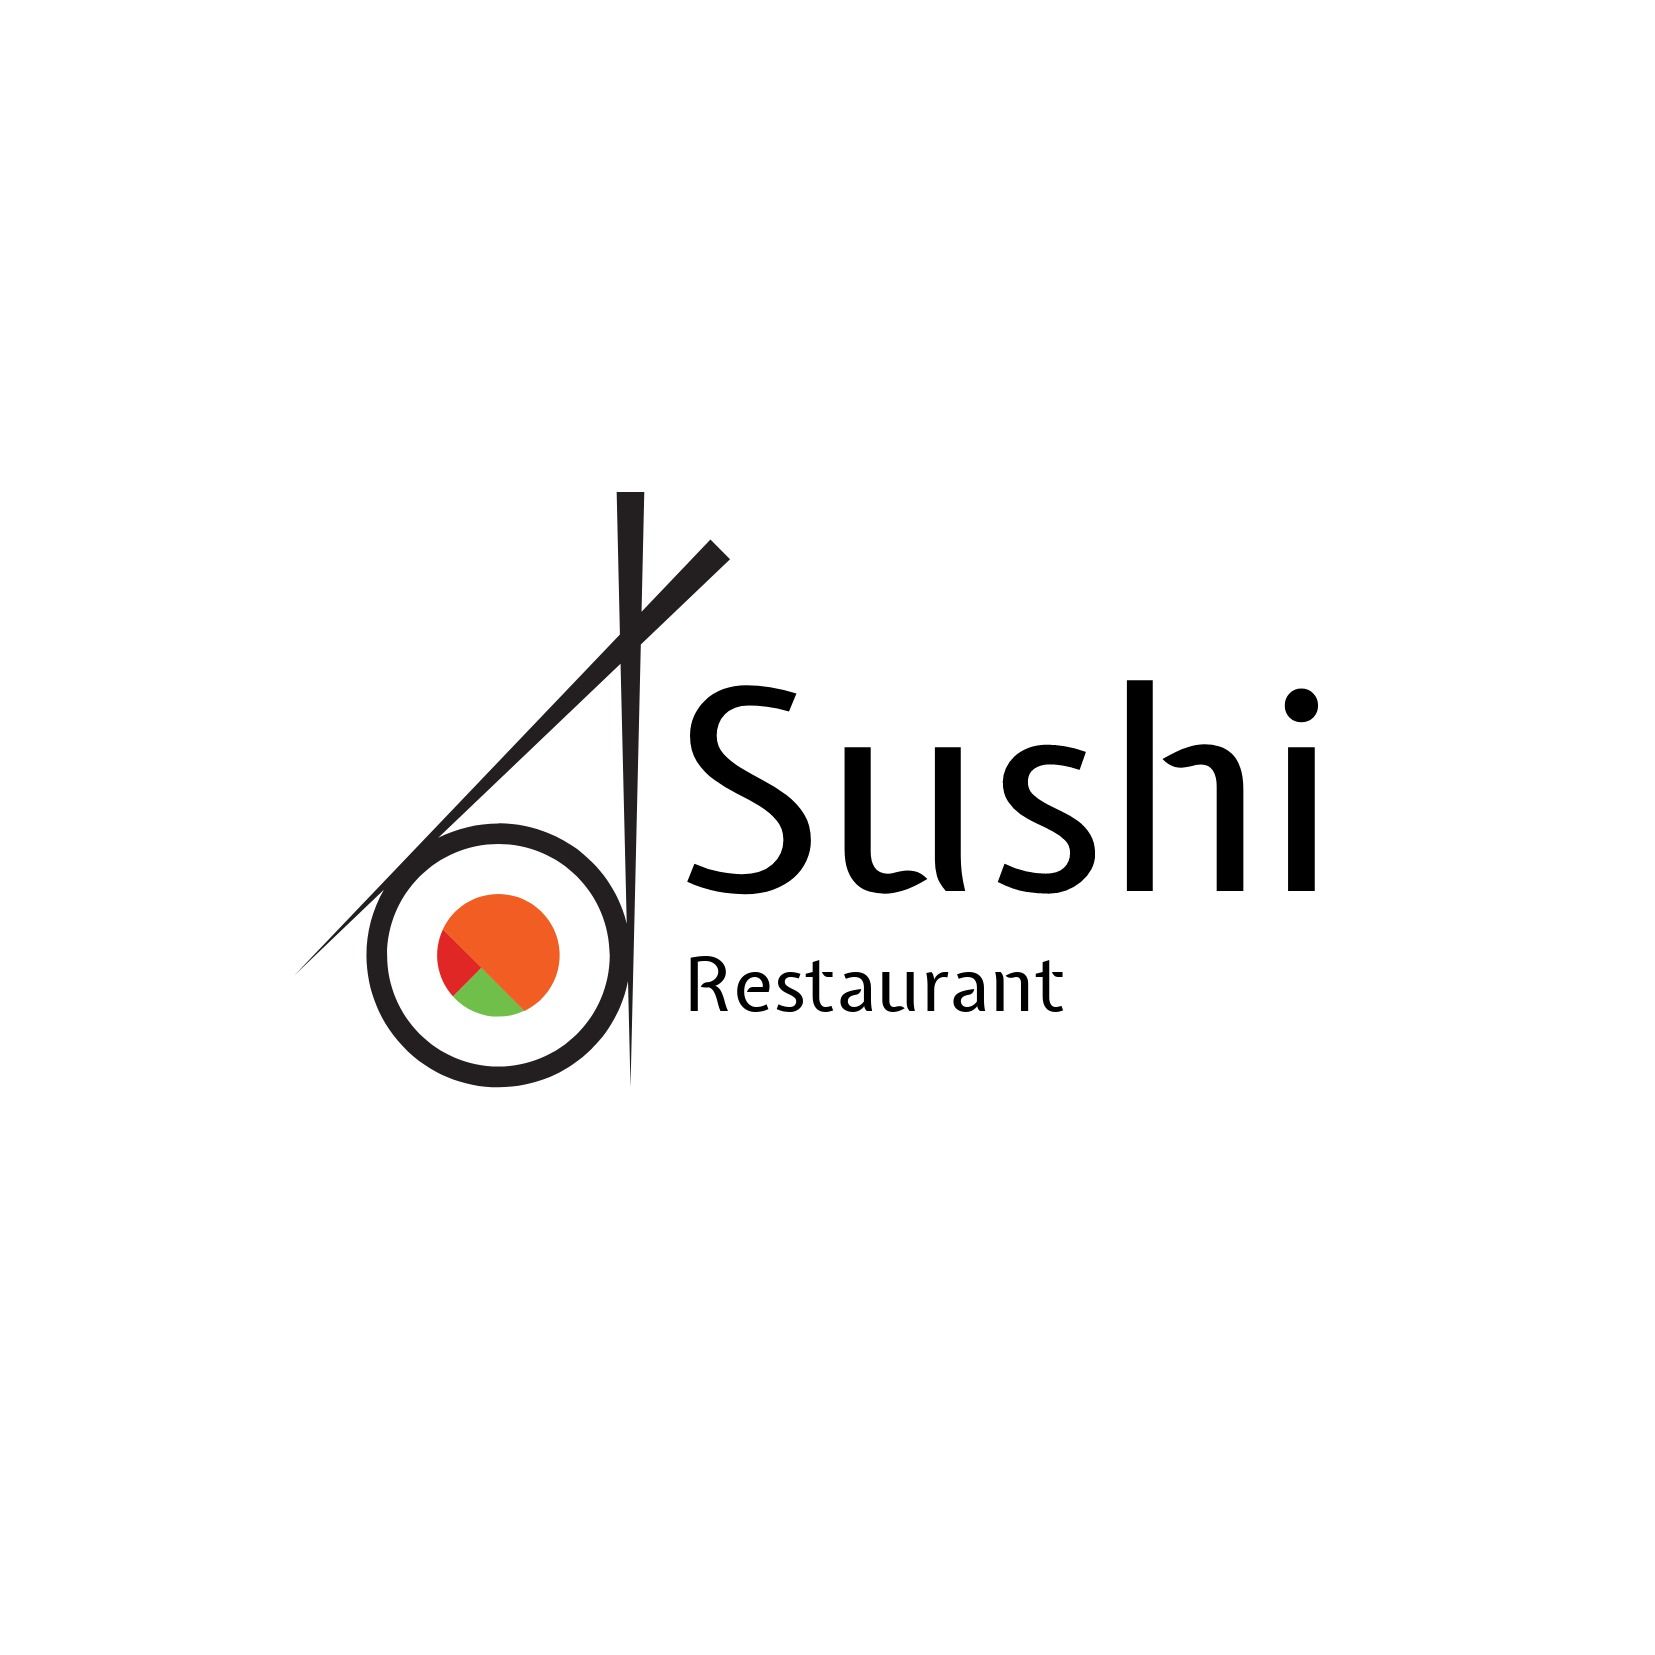 Logotipo del restaurante de sushi con palillos y sushi fresco - Nitidez de la fuente Expletus Sans - Imagen